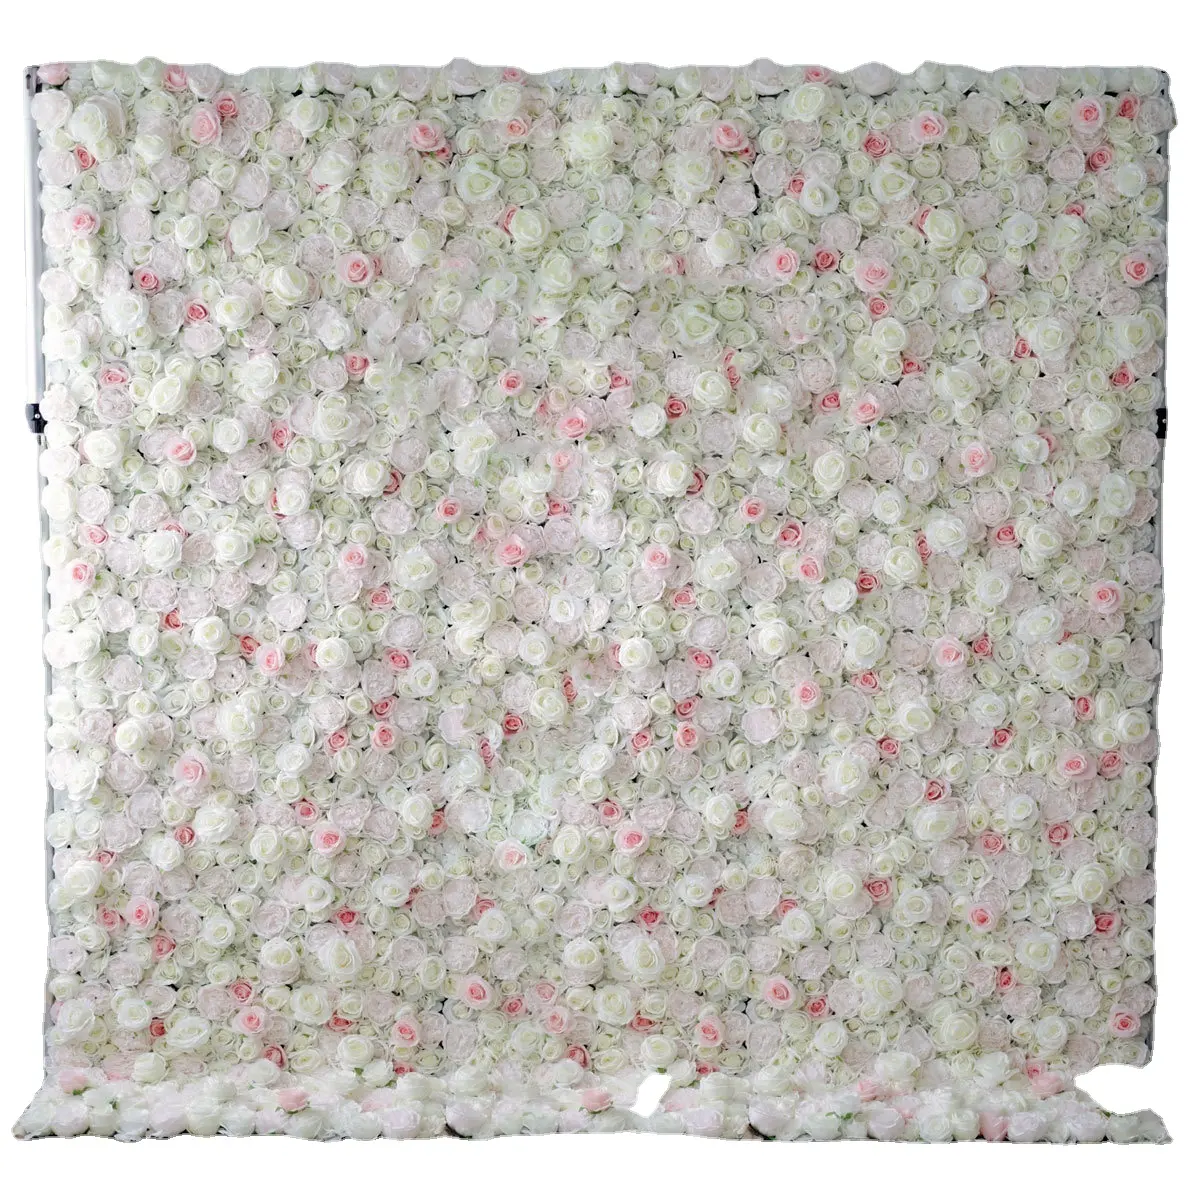 Artistico pannello da parete con fiori di seta rosa bianco piuma fiori rotolo di stoffa sfondo per decorazioni di nozze e ambiente artistico di Capodanno